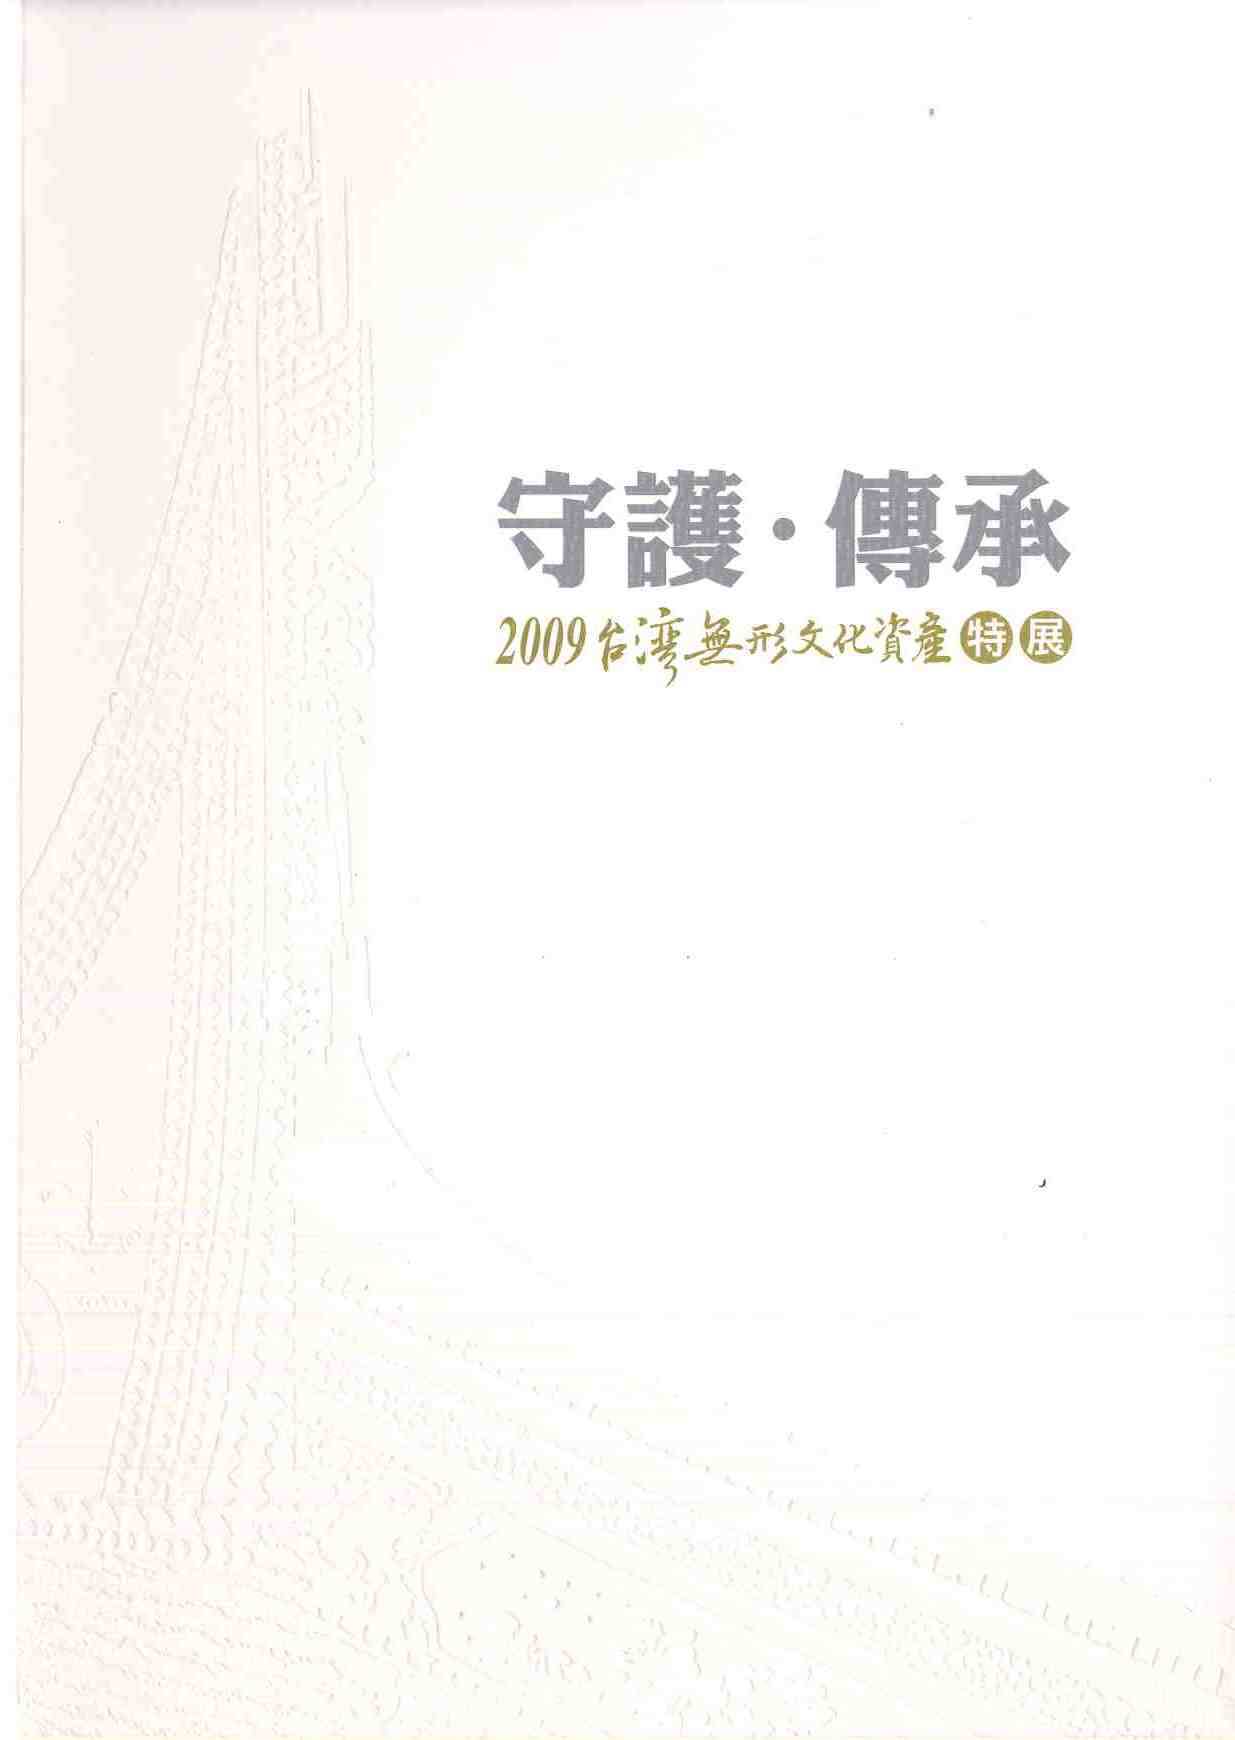 守護 傳承2009台灣無形文化資產特展